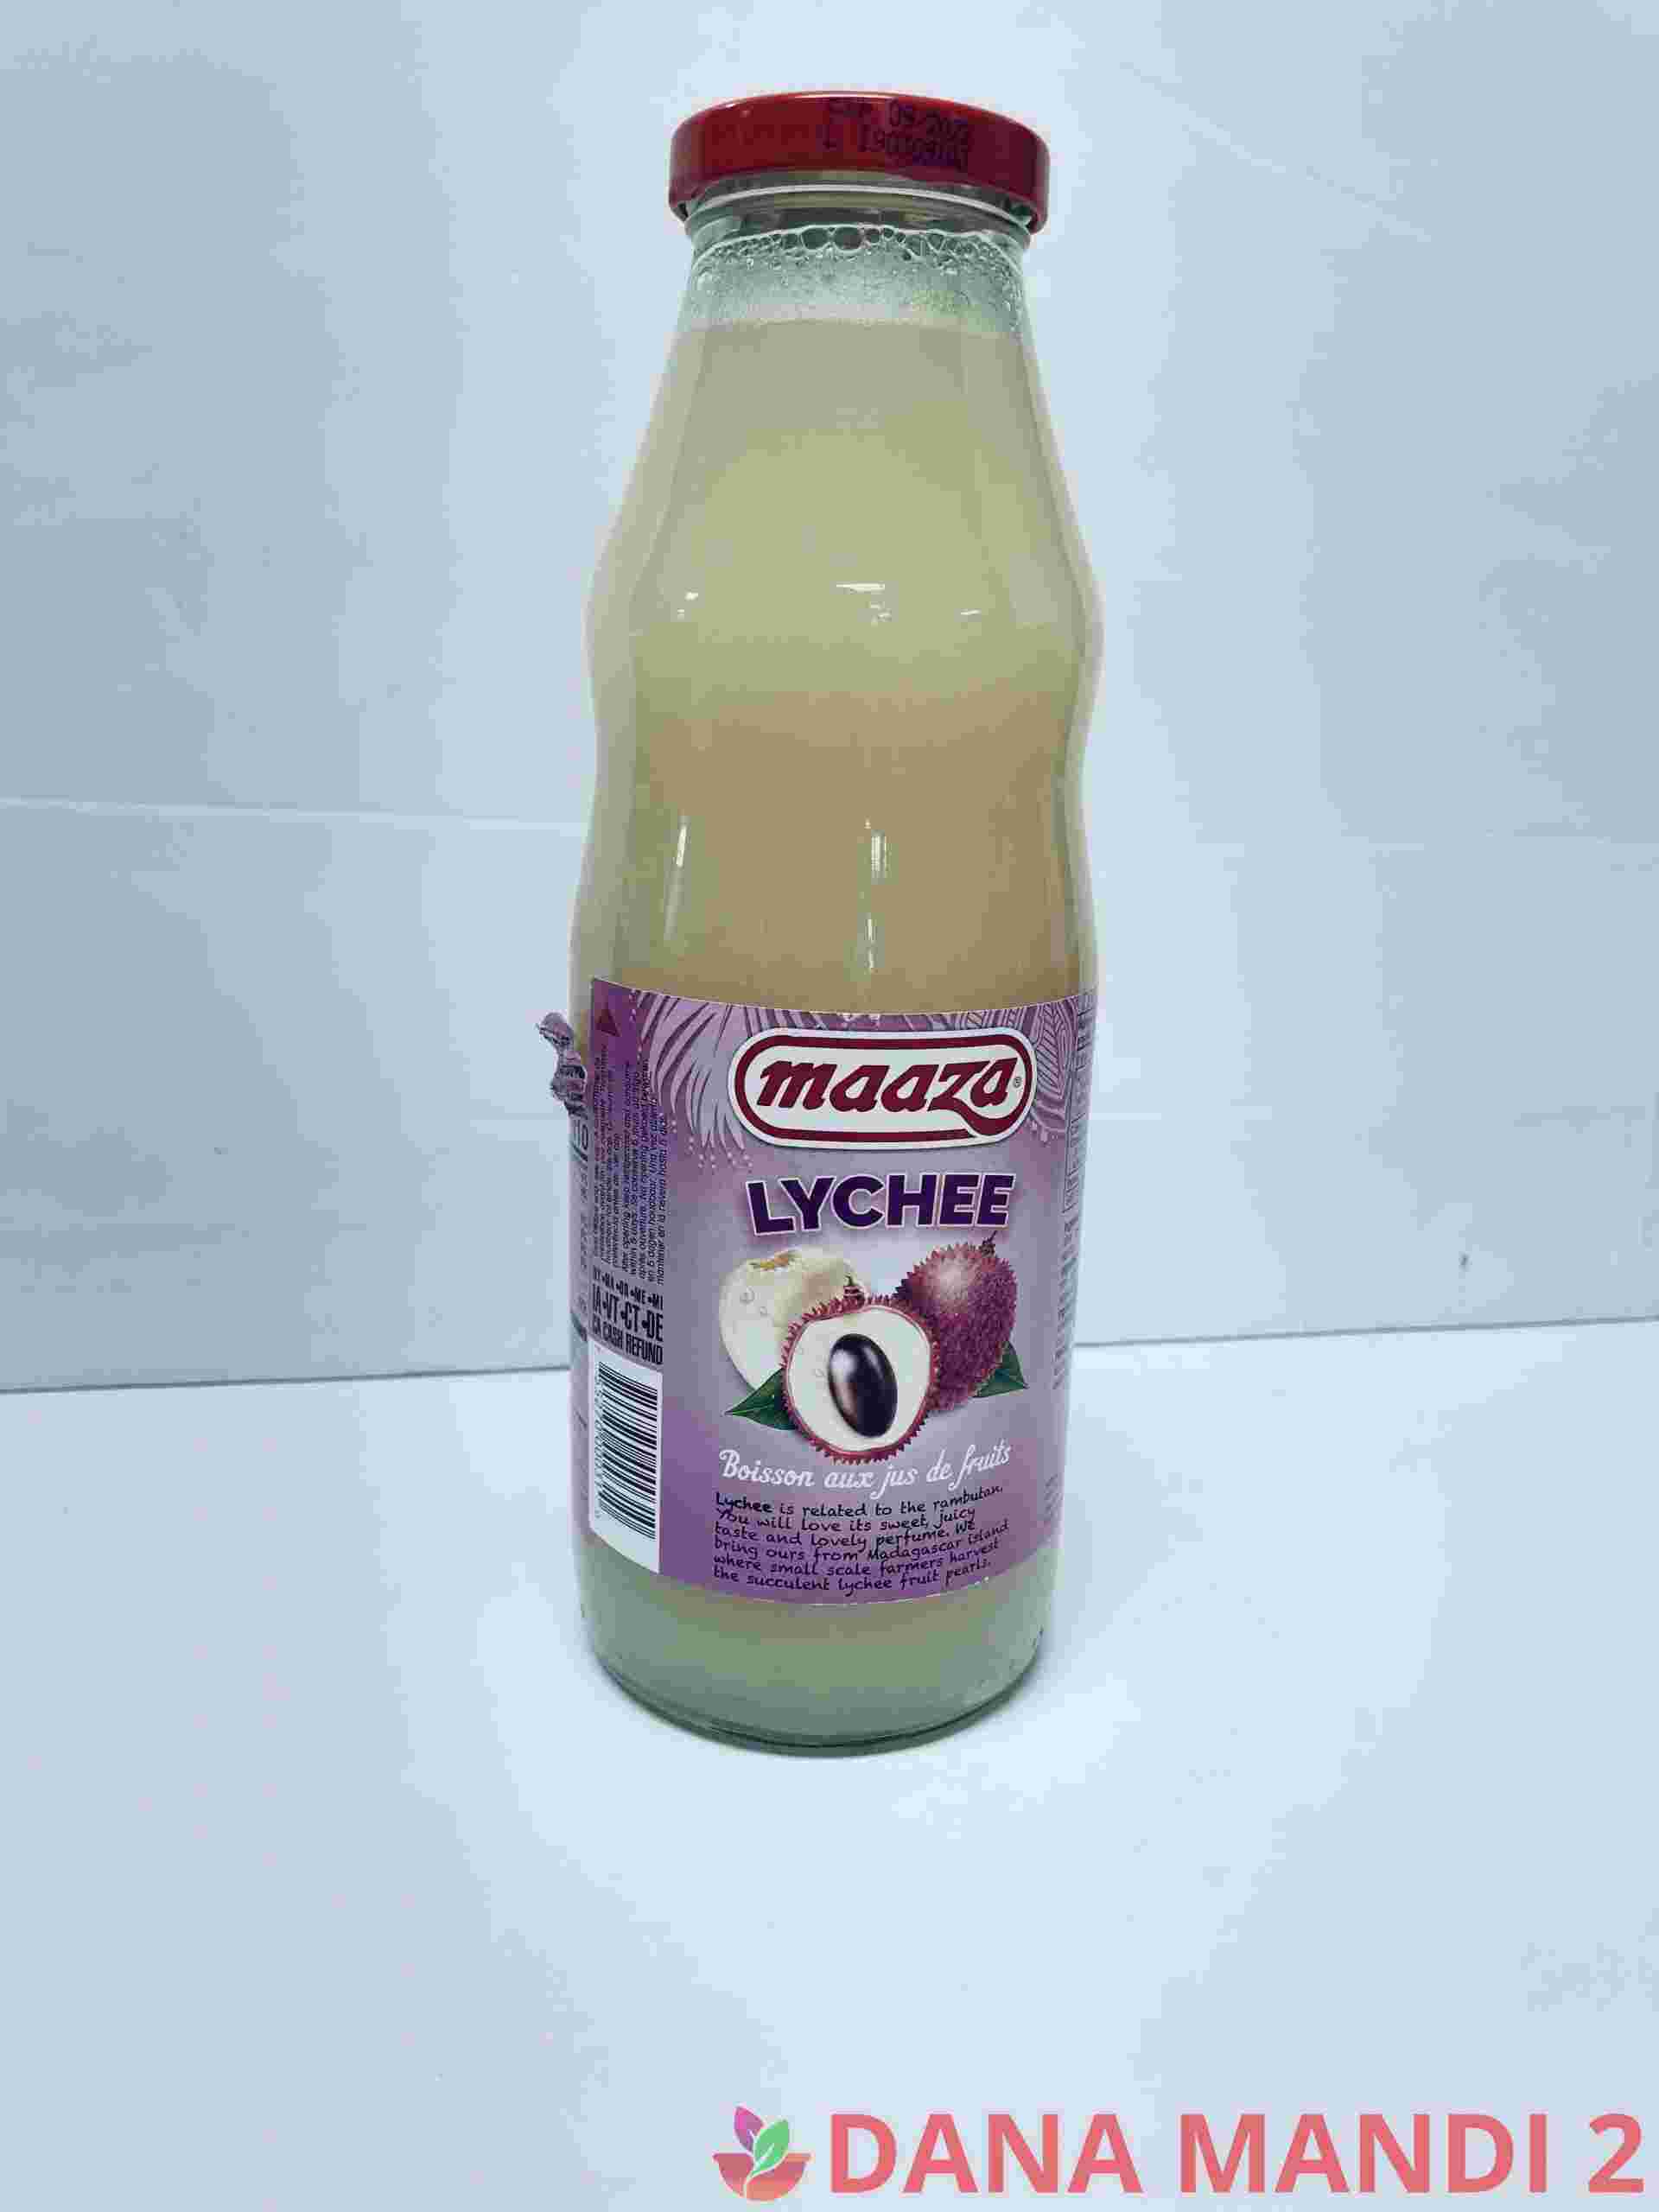 Mazza Lychee Juice Glass Bottle